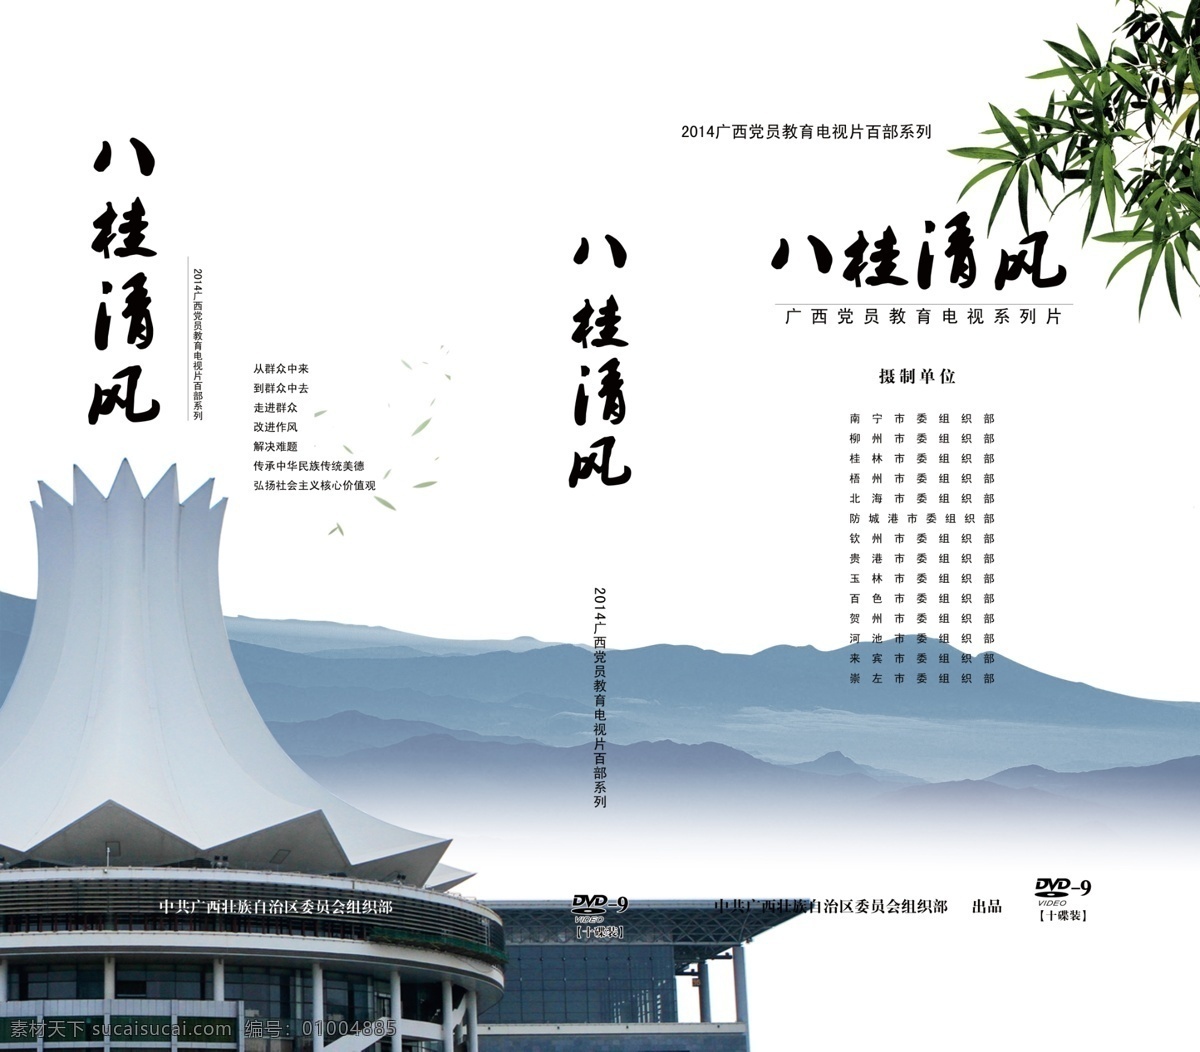 广西 党员教育 电视 百 部 系列 封面设计 光碟封面设计 原创设计 原创包装设计